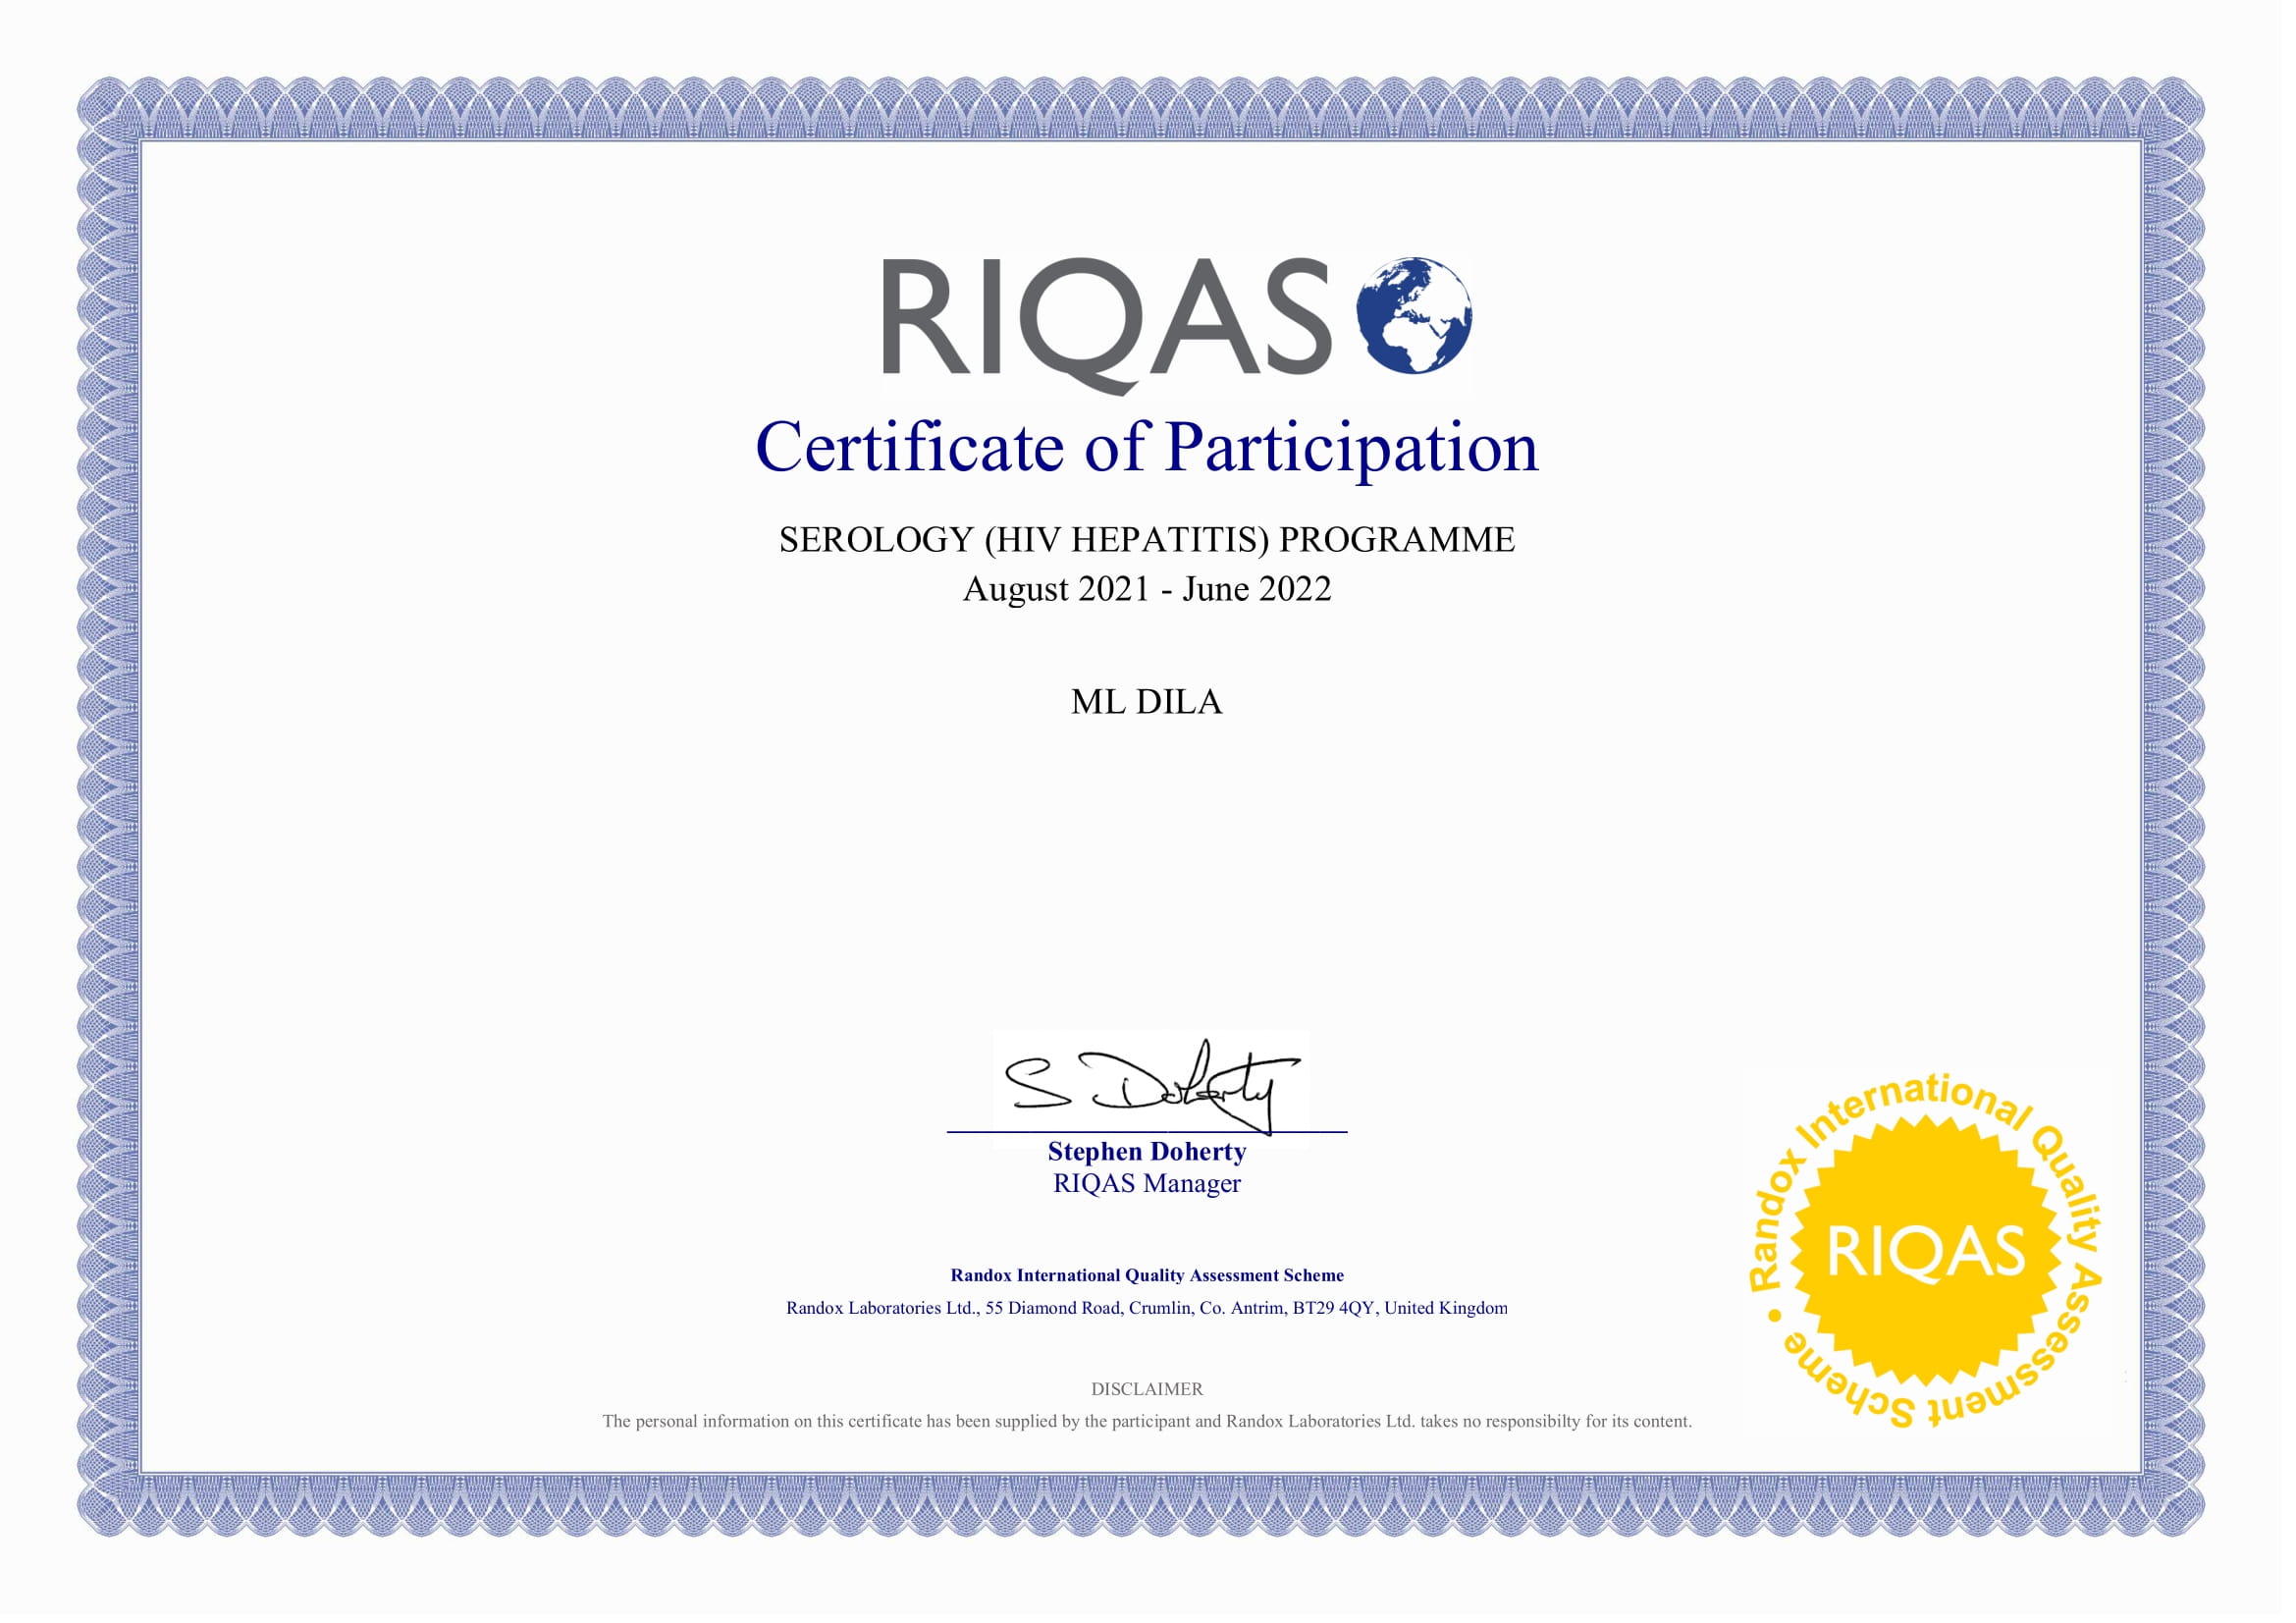 Фото - Сертифікат участі в програмі зовнішньої оцінки якості RIQAS (Серологія ВІЛ Гепатити)